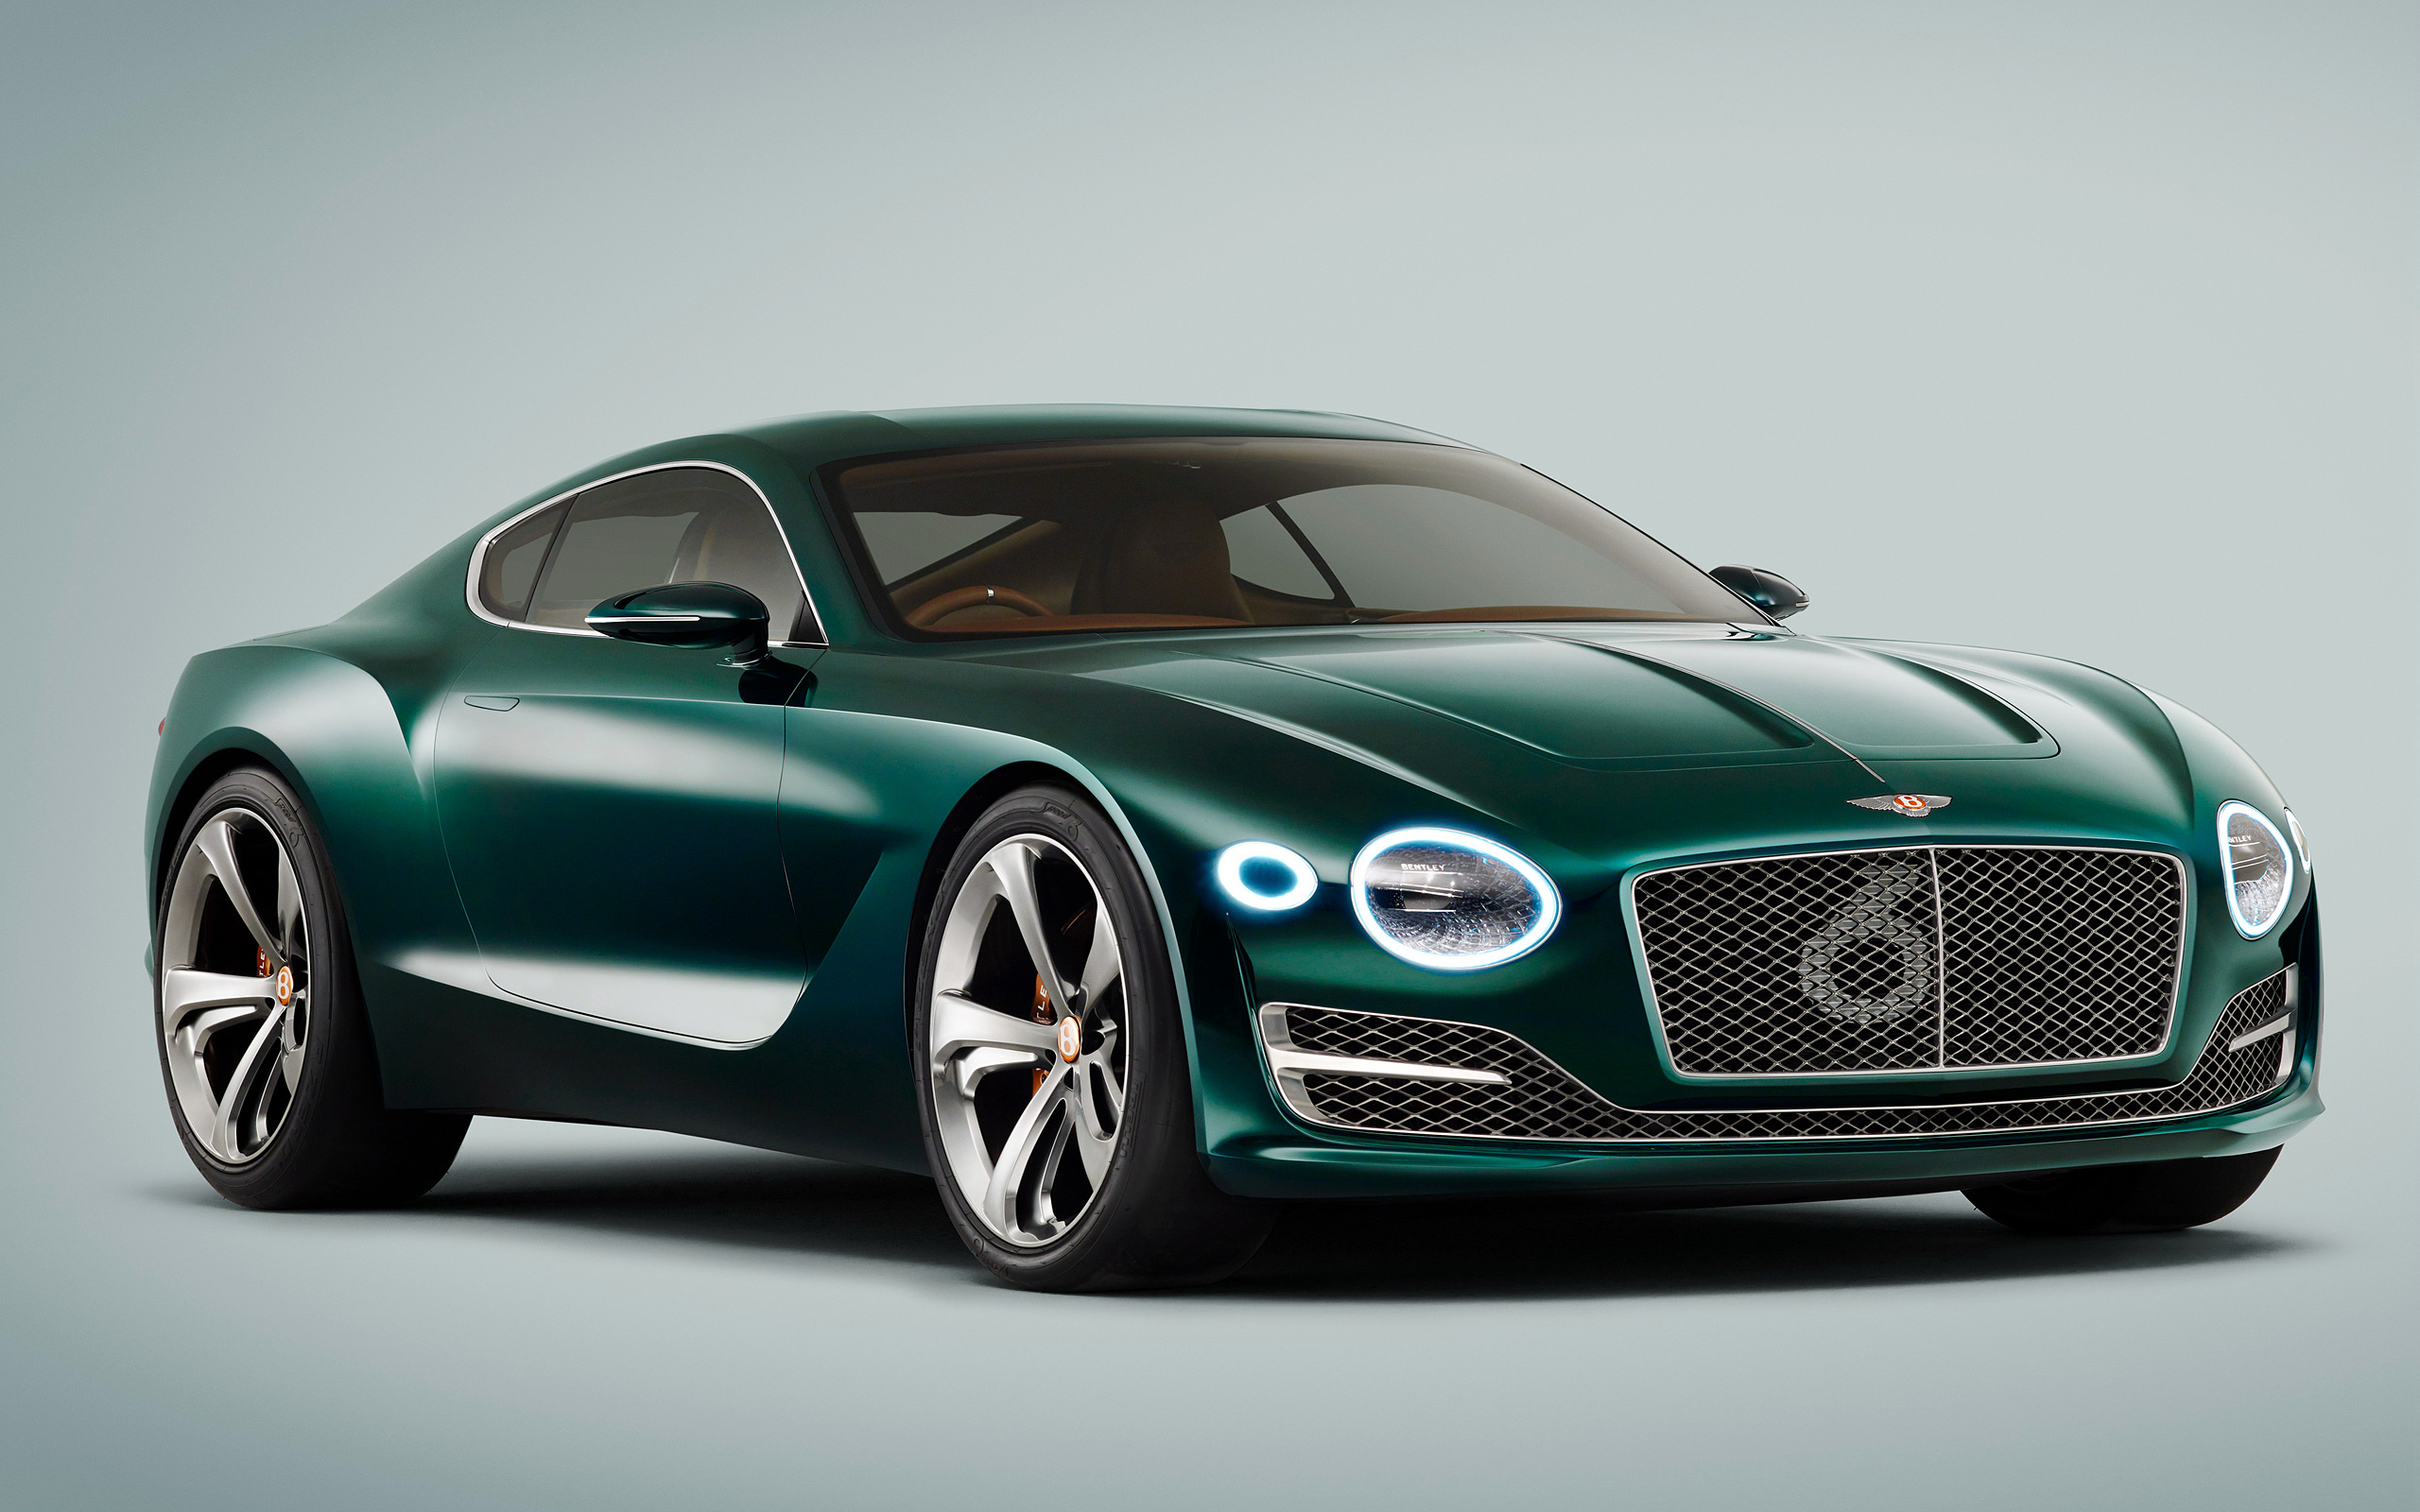  2015 Bentley EXP 10 Speed 6 Concept Wallpaper.